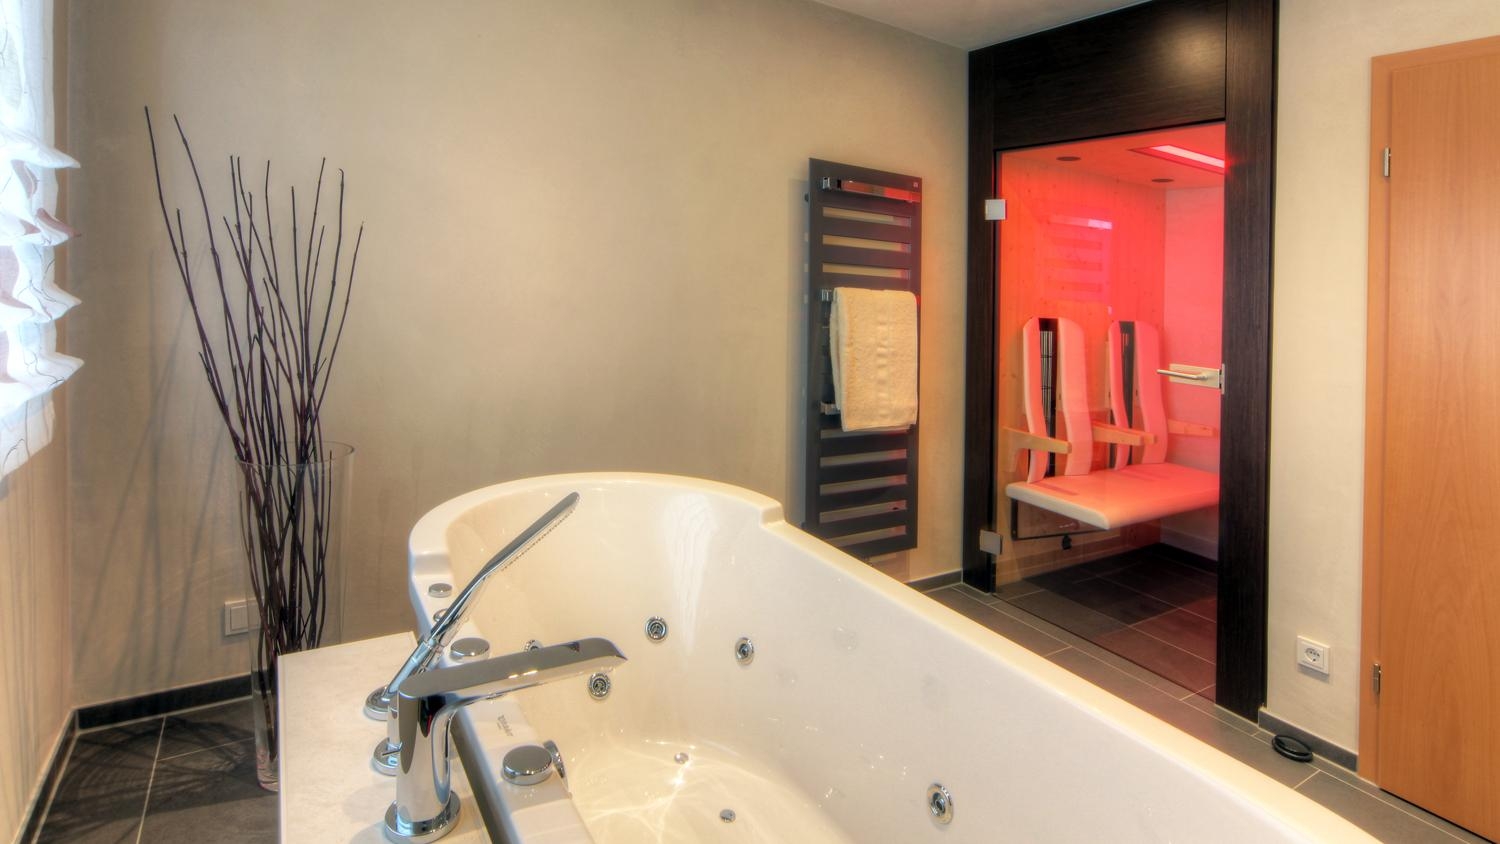 -Anzeige- #bestebadstudios #badezimmer #bad #badewanne #modernesbadezimmer #badsanierung #badeko